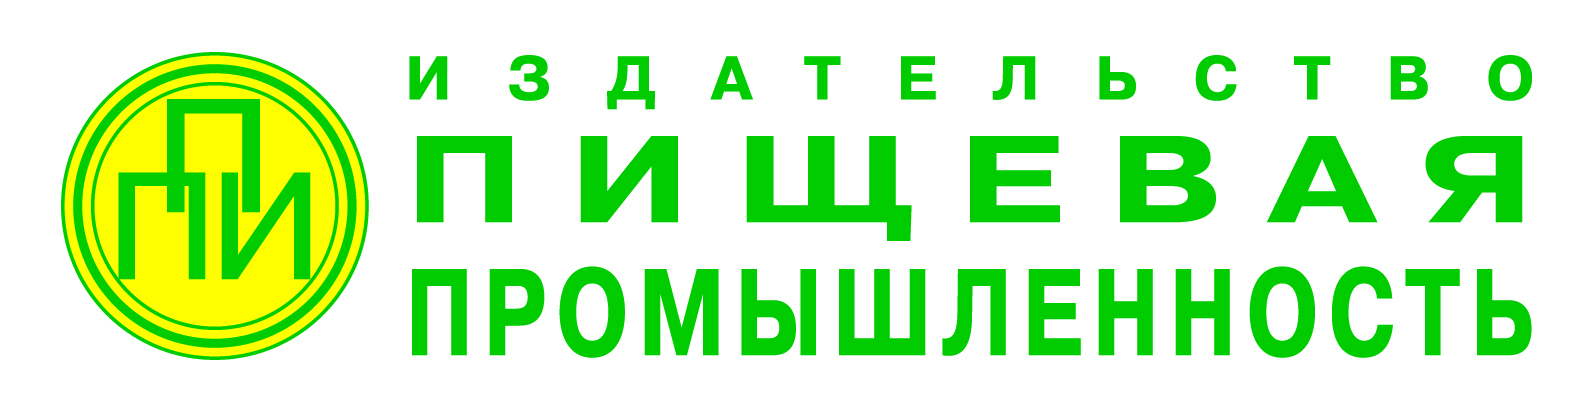 logo_PP_24022012